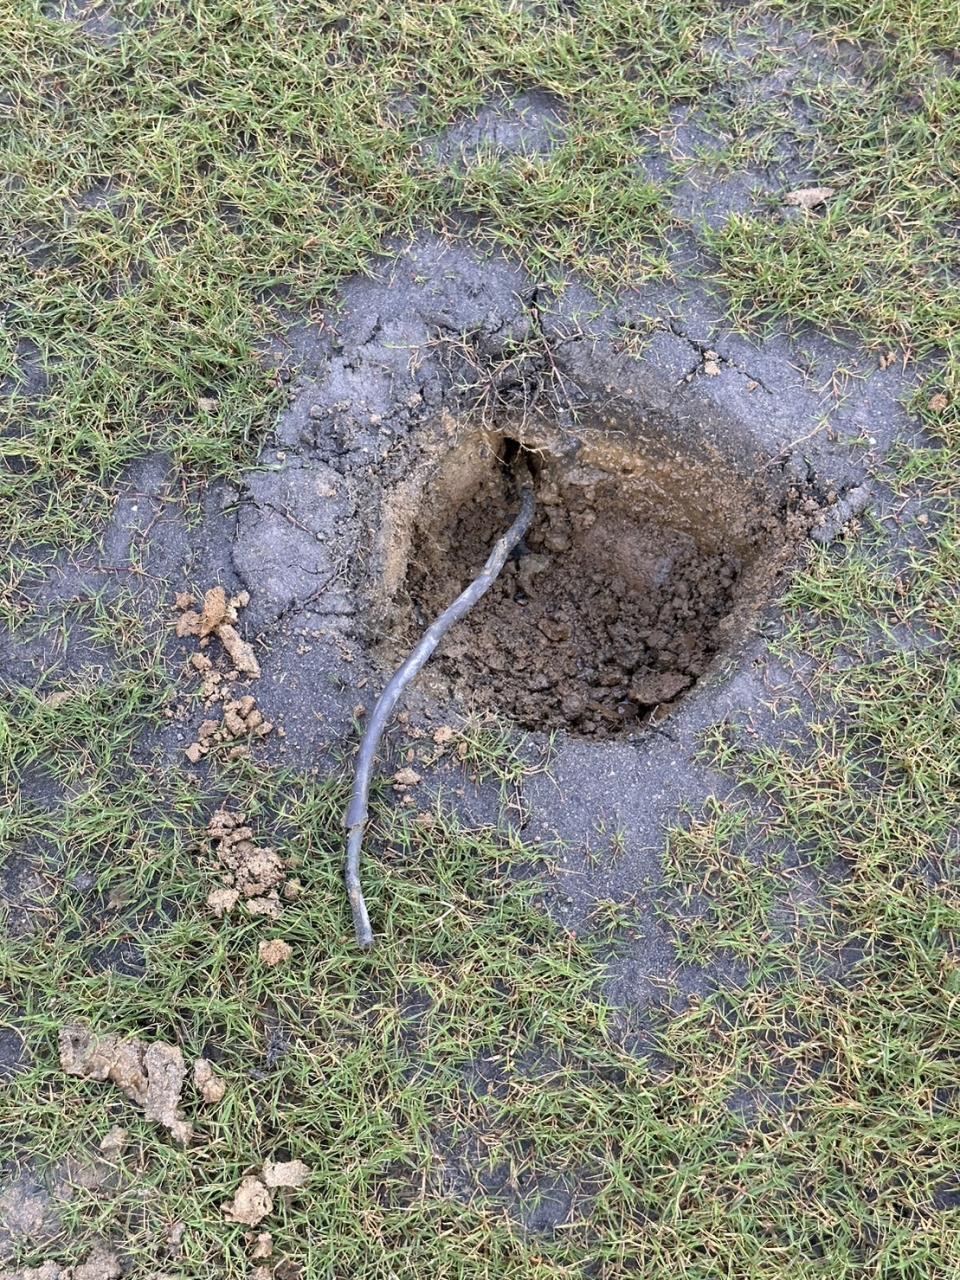 新竹棒球場場勘竟挖到廢土和廢棄電線   圖:翻攝畫面